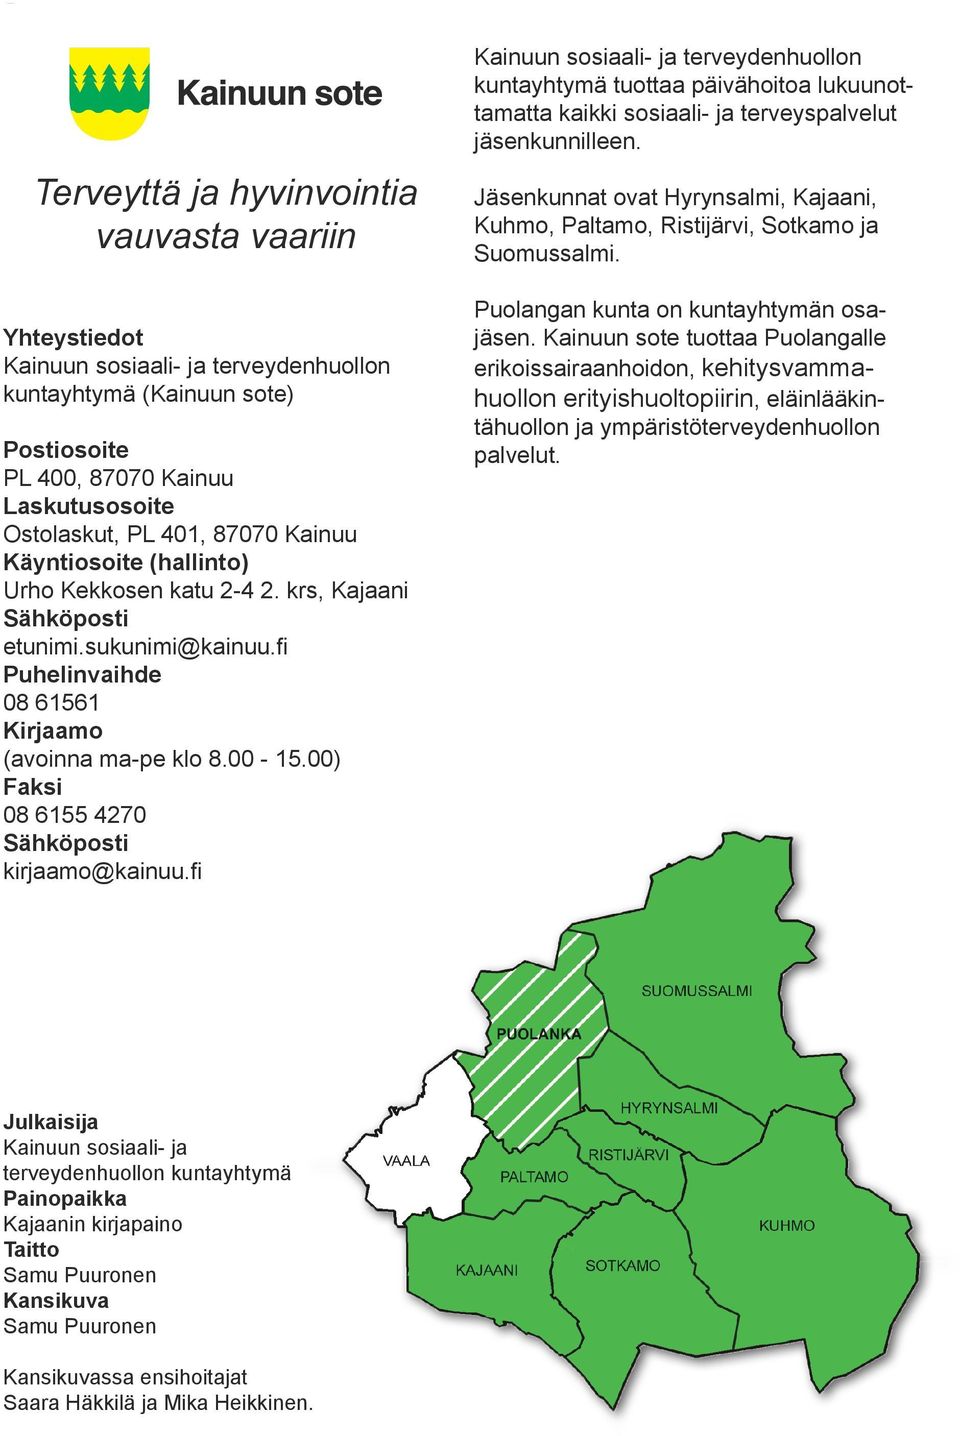 00) Faksi 08 6155 4270 Sähköposti kirjaamo@kainuu.fi Kainuun sosiaali- ja terveydenhuollon kuntayhtymä tuottaa päivähoitoa lukuunottamatta kaikki sosiaali- ja terveyspalvelut jäsenkunnilleen.